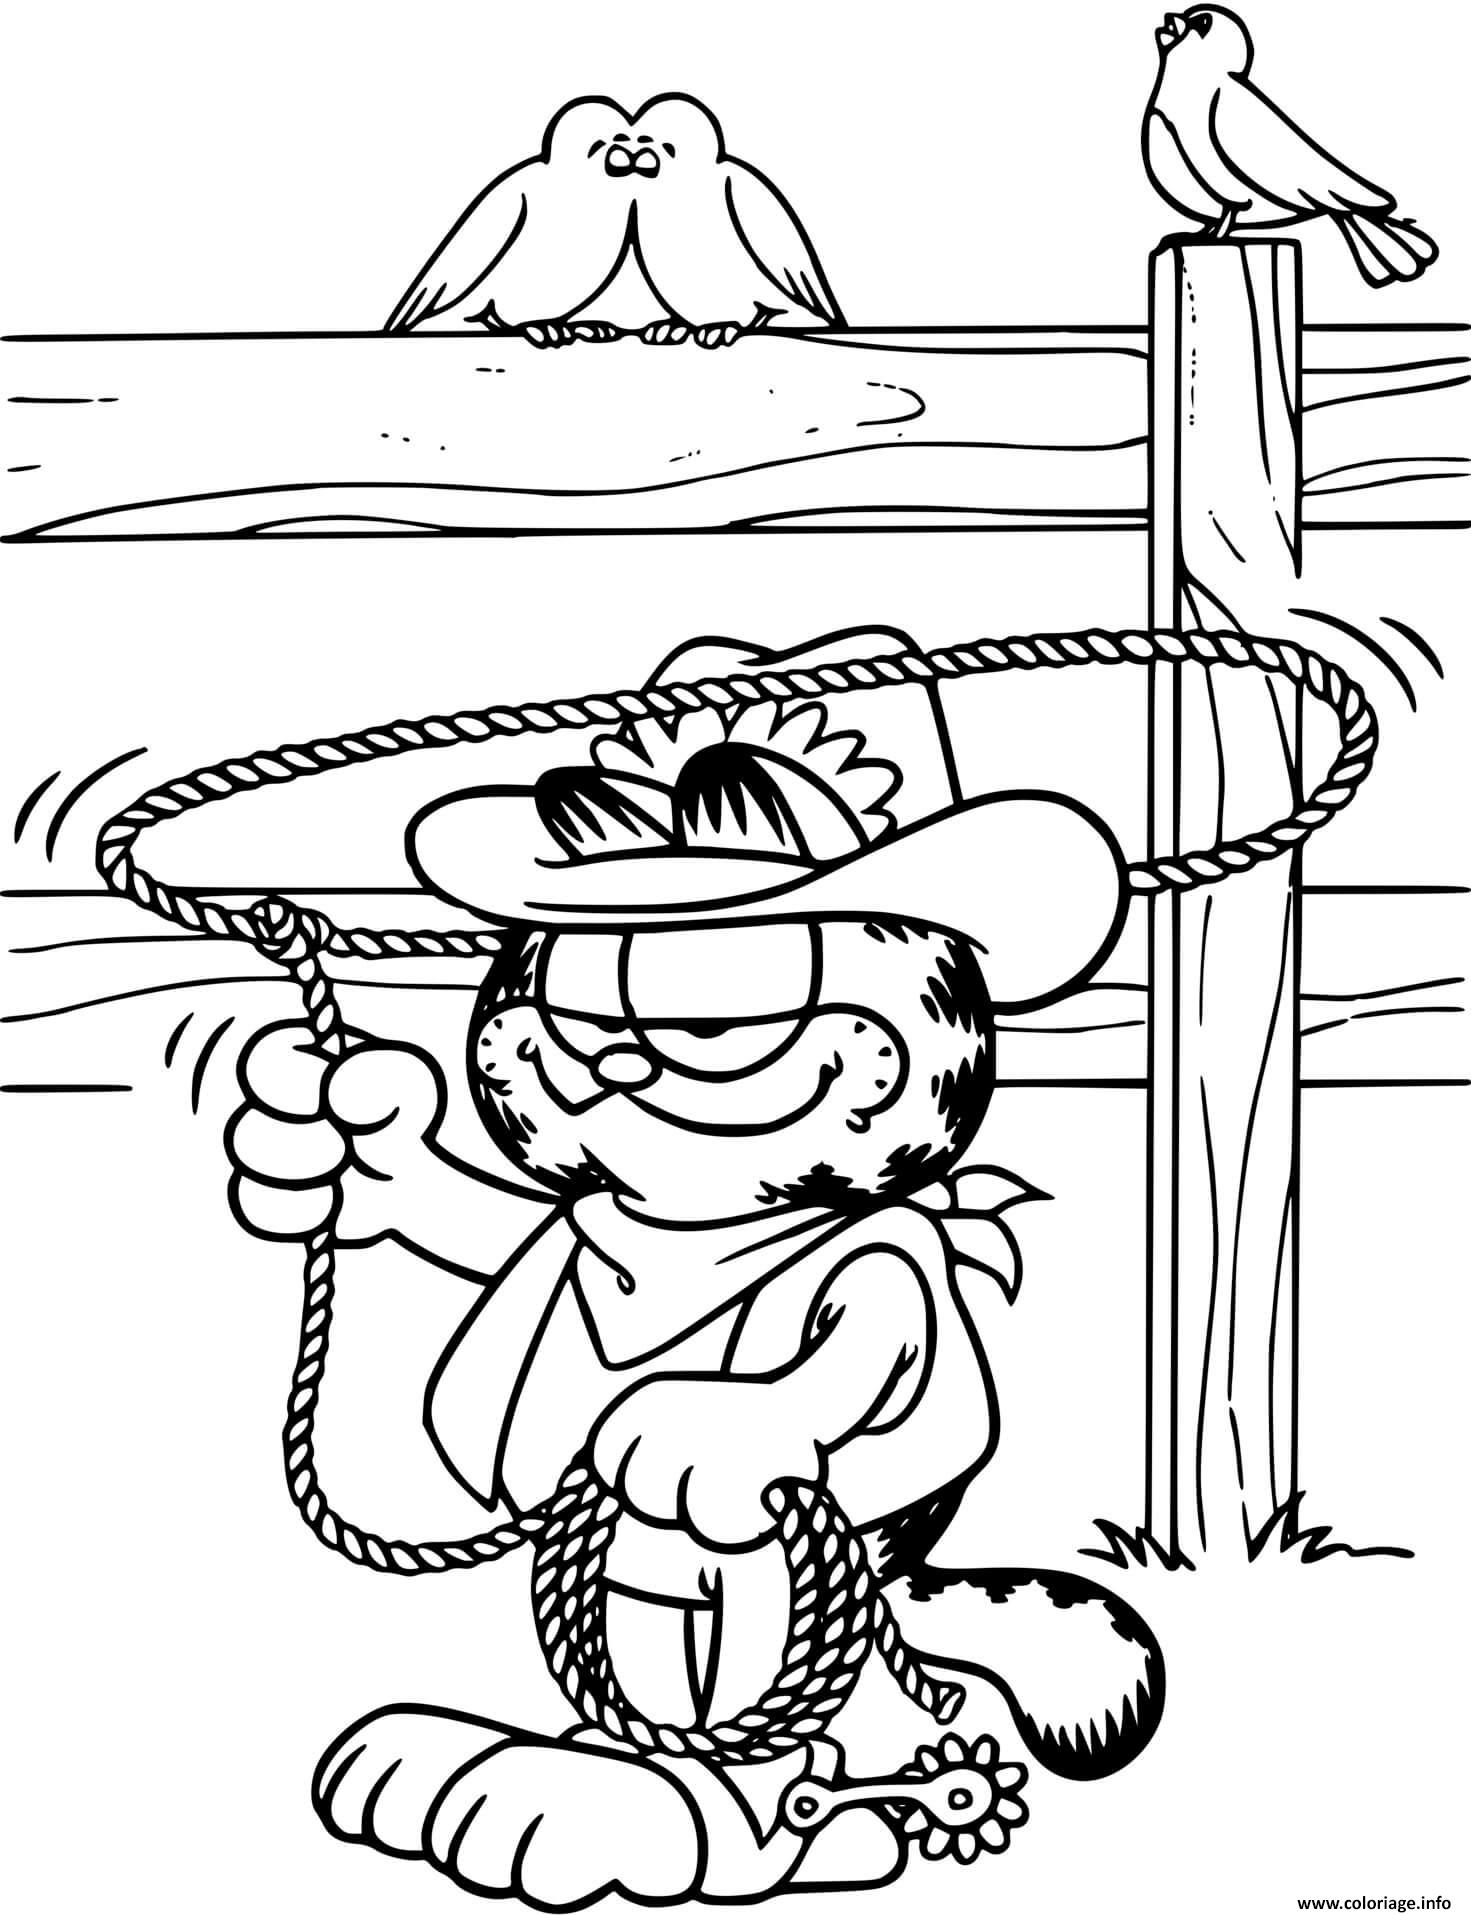 Coloriage Garfield En Cowboy Avec Son Lasso Dessin à Imprimer